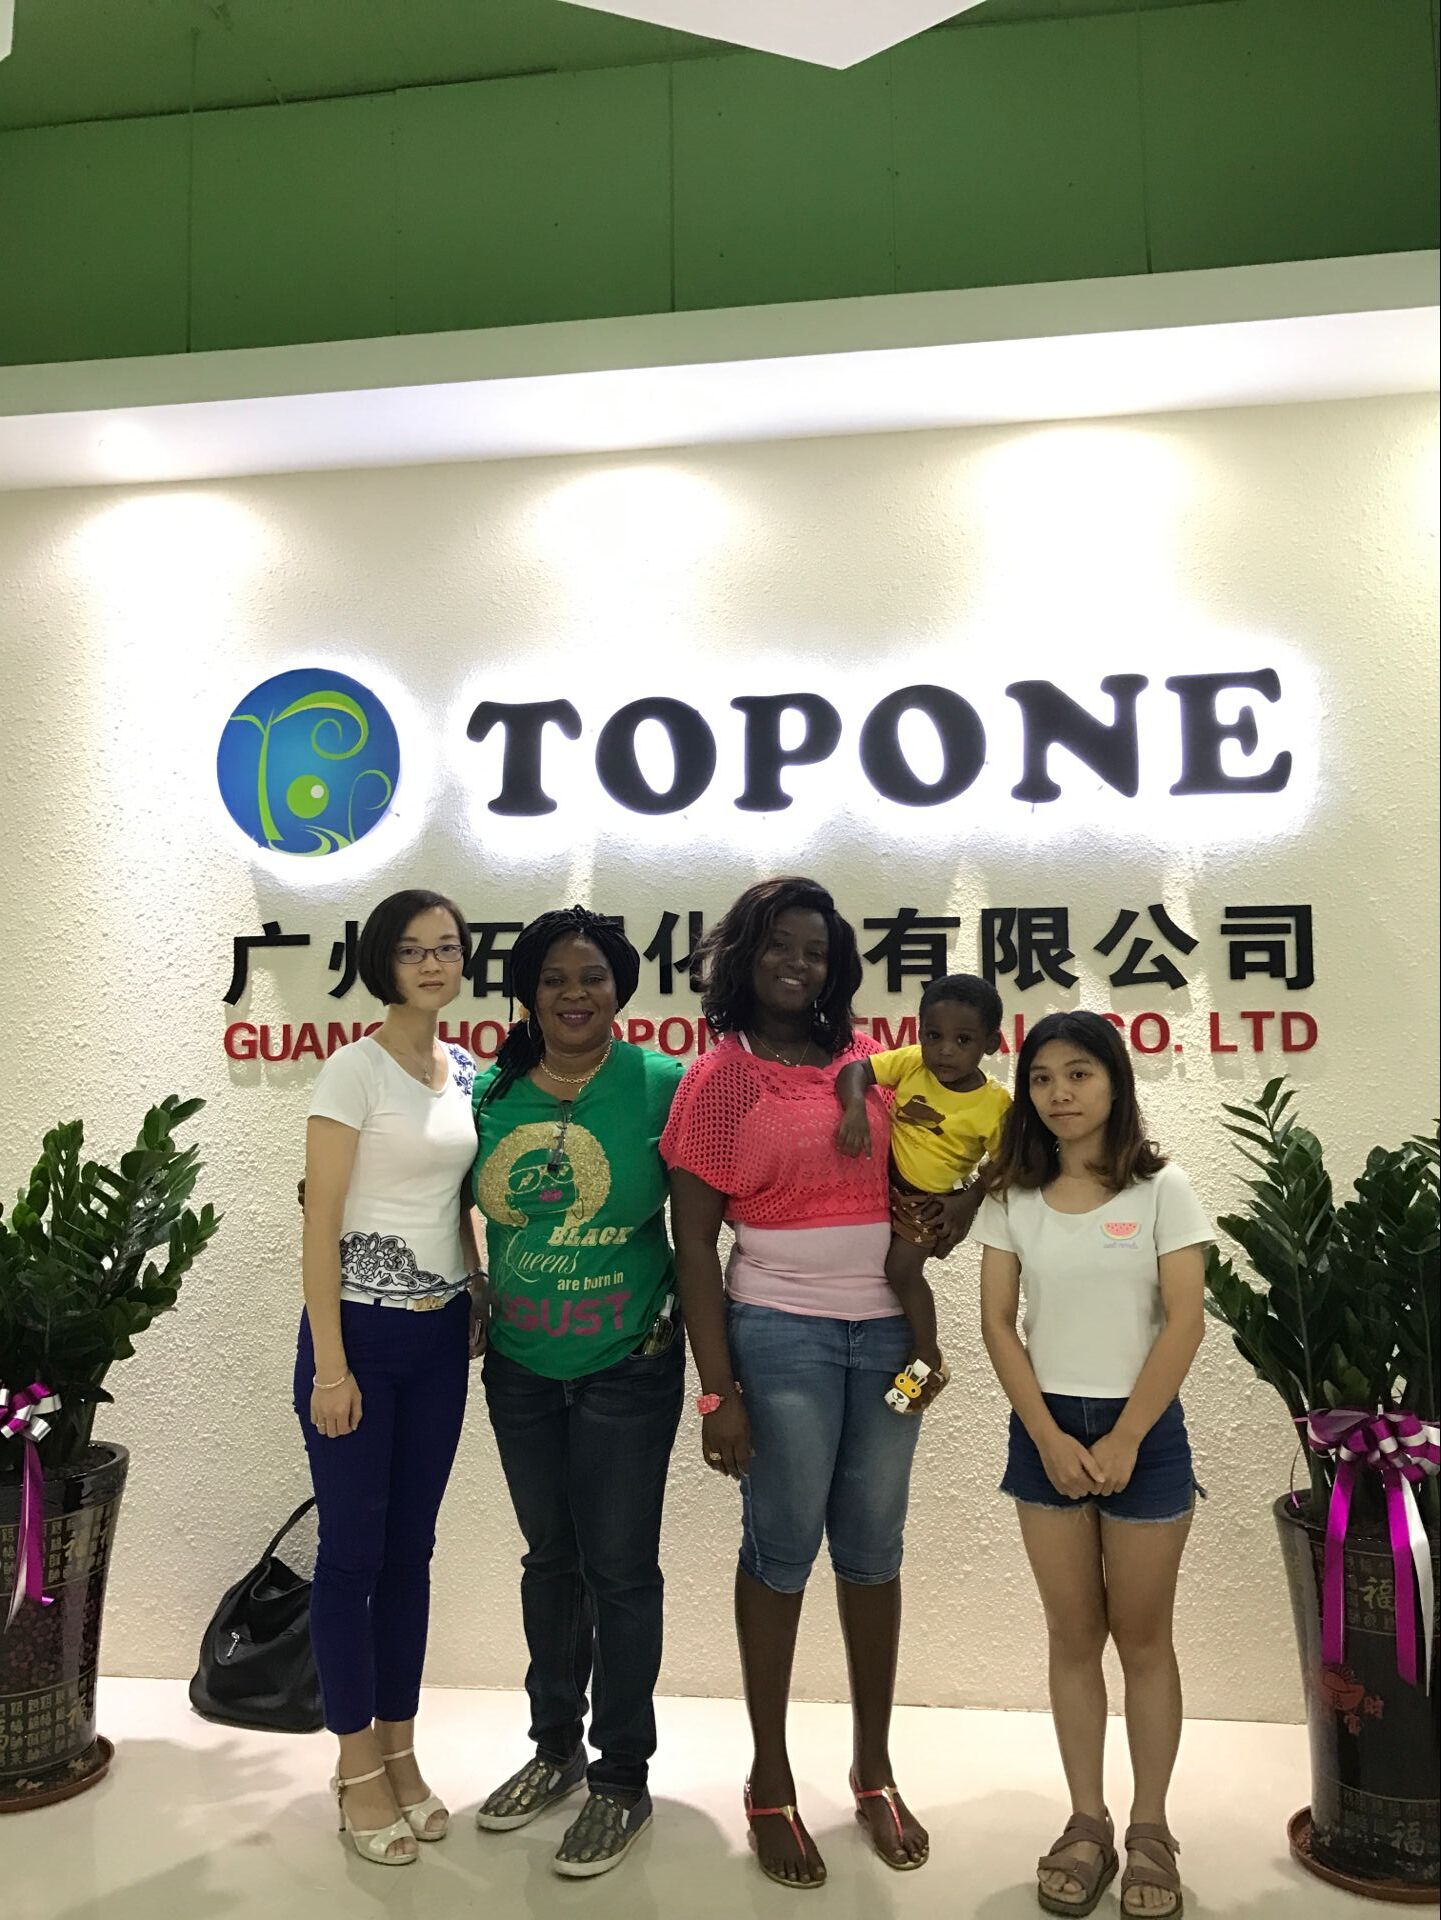 نرحب بالعملاء من غانا قم بزيارة شركة Topone --- TOPONE NEWS